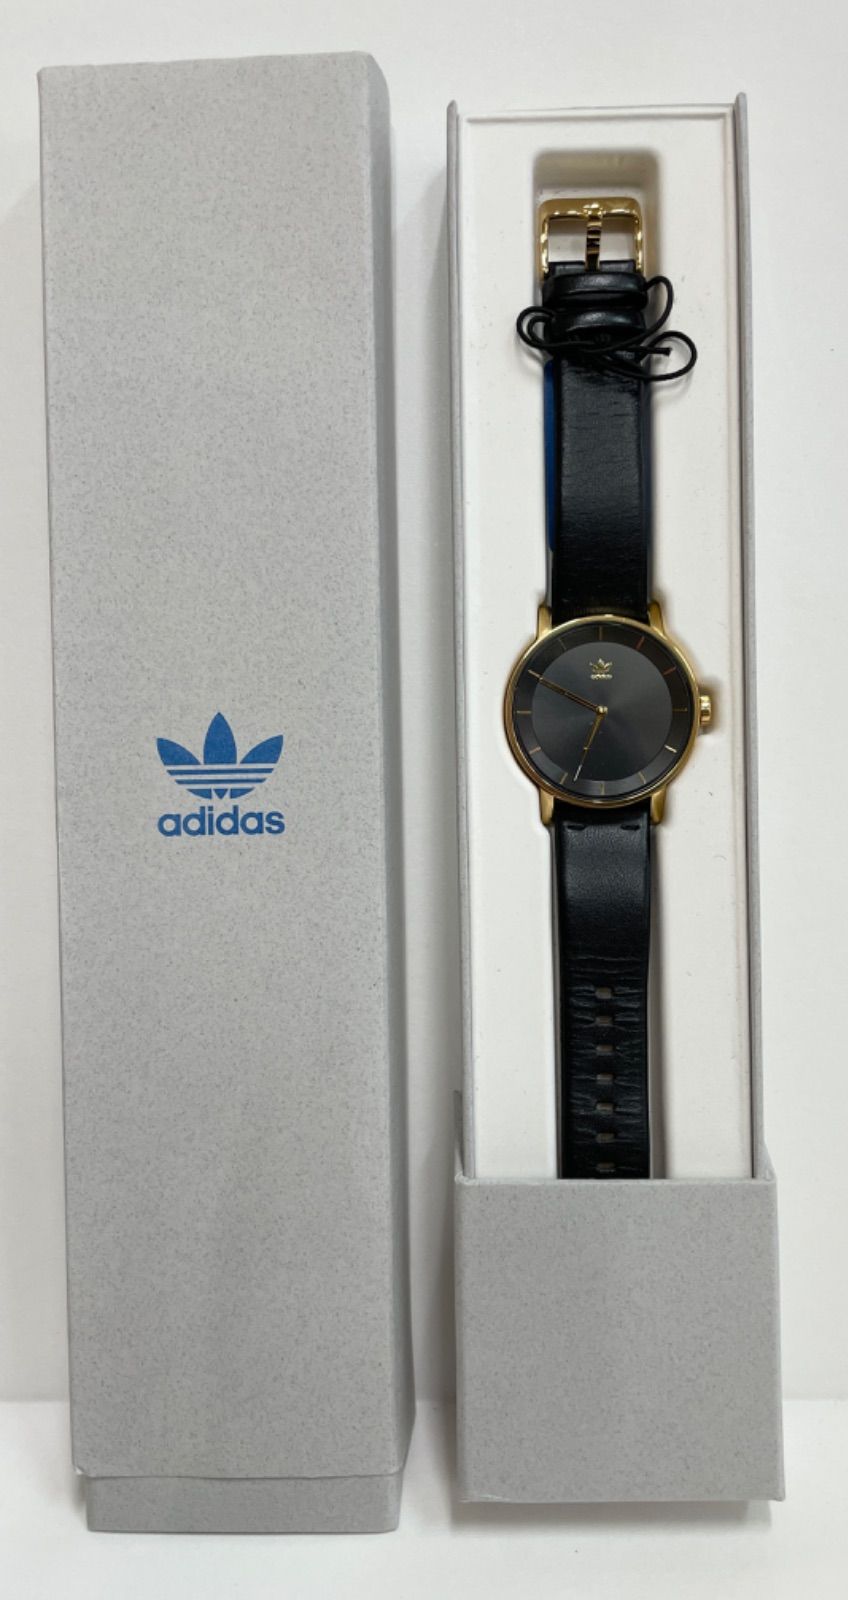 倉吉店】adidas 腕時計 DISTRICT-L1 / Z081 604-00 / CJ6333【131-0322 